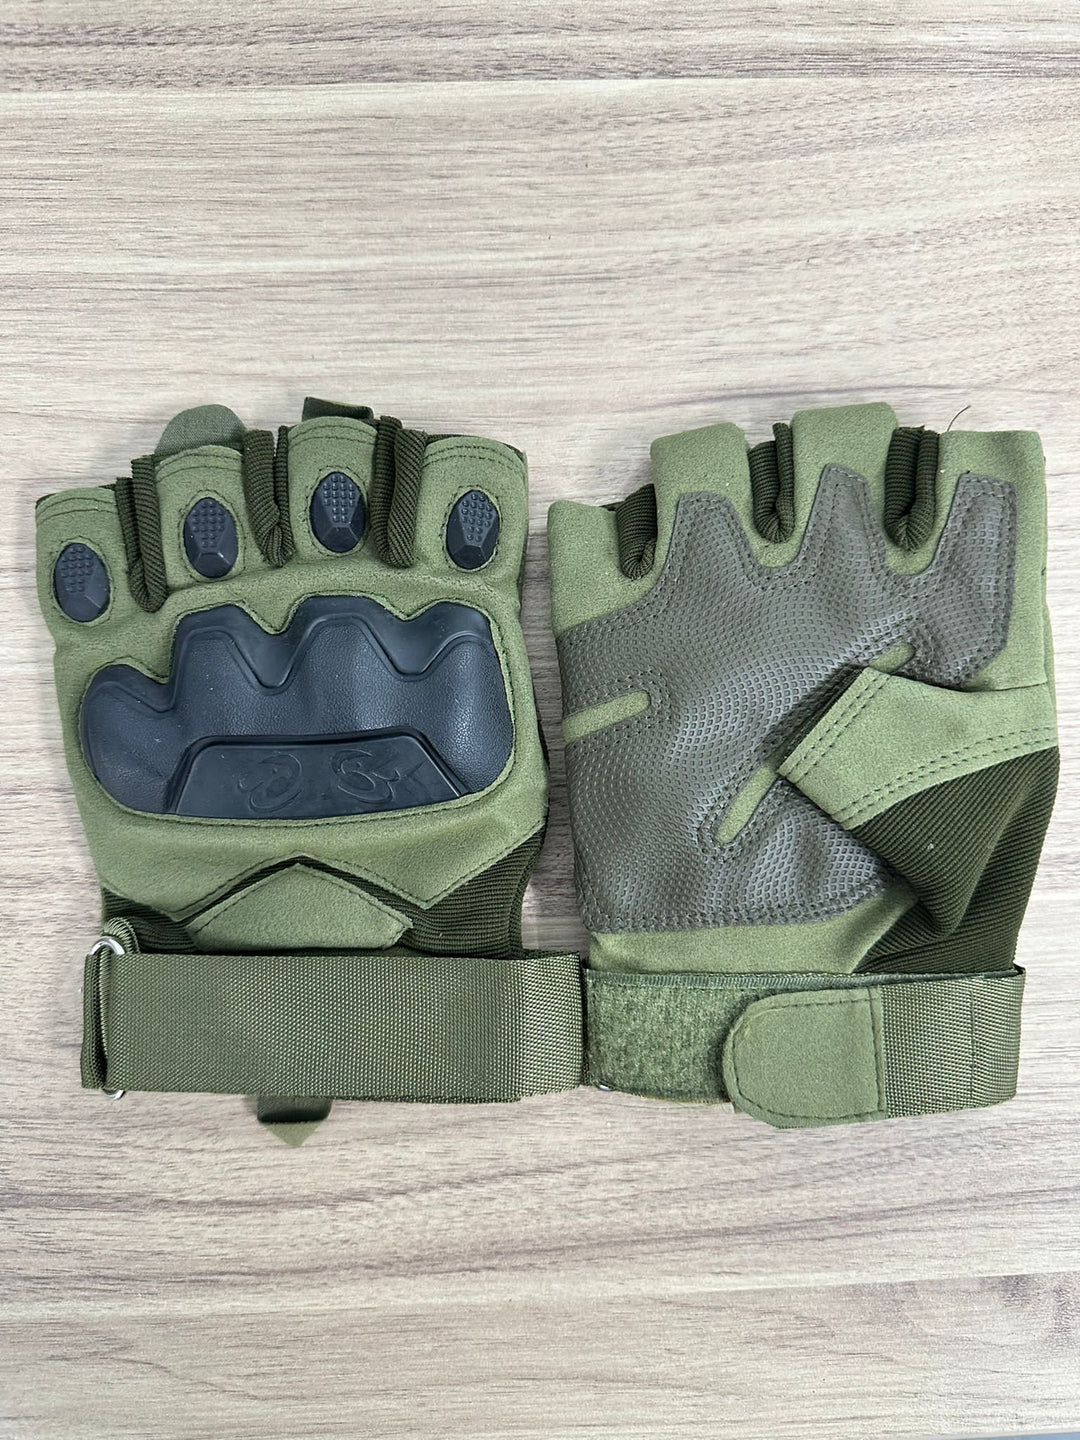 Michael's Fingerless Combat Gloves